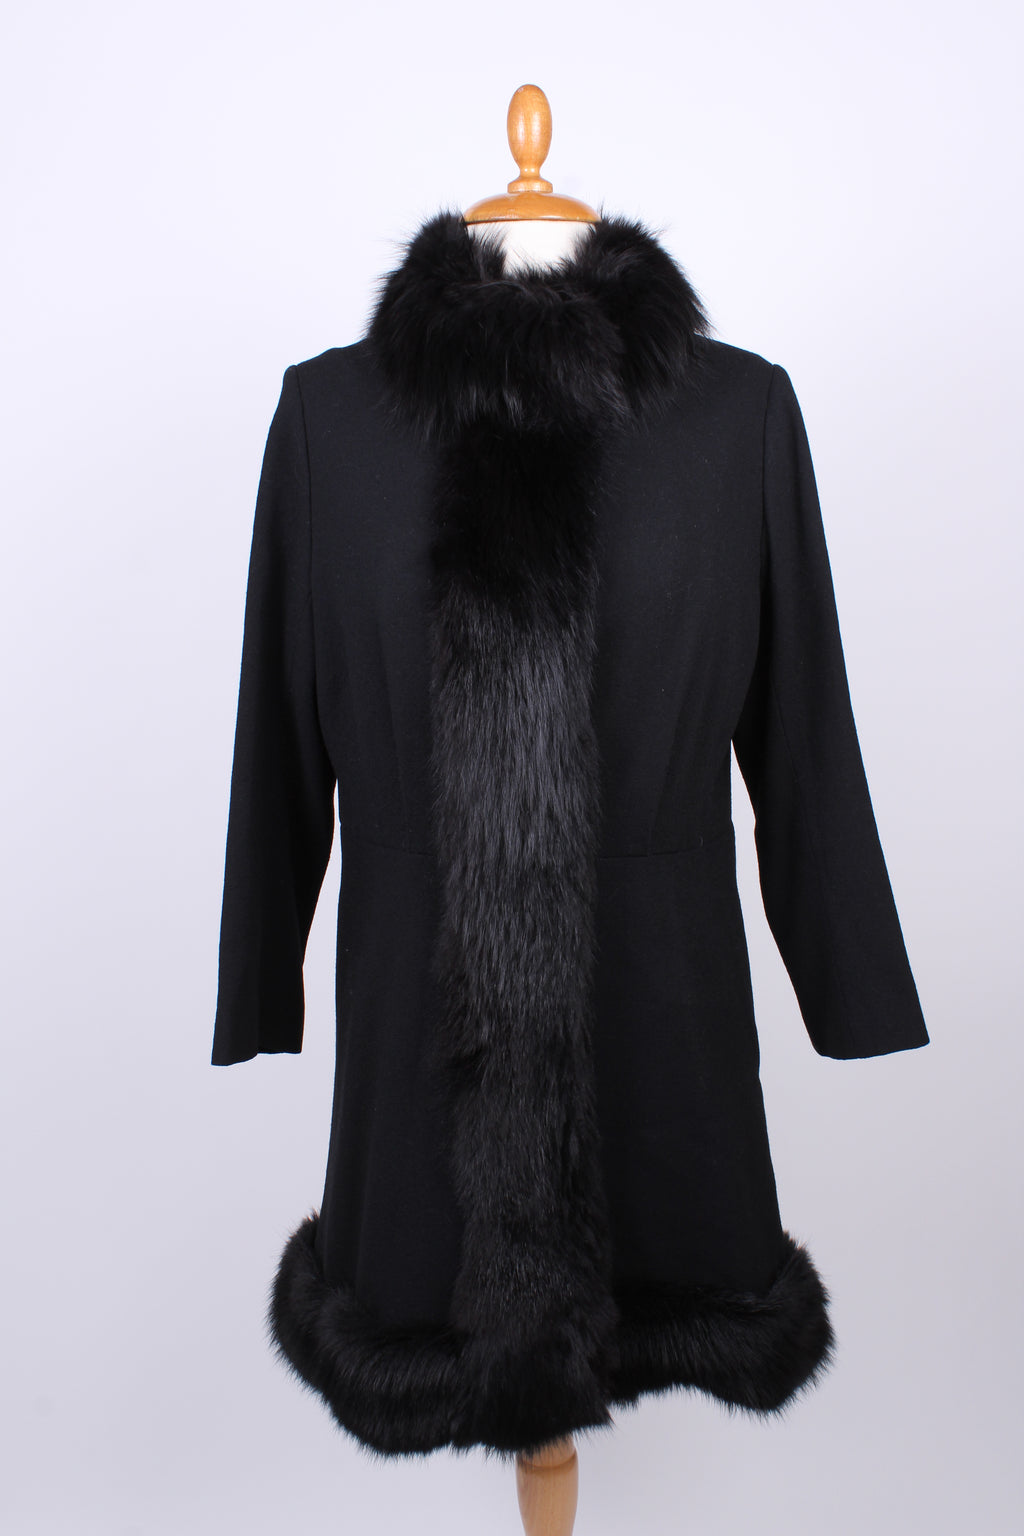 Sort frakke med pels. 1960. S